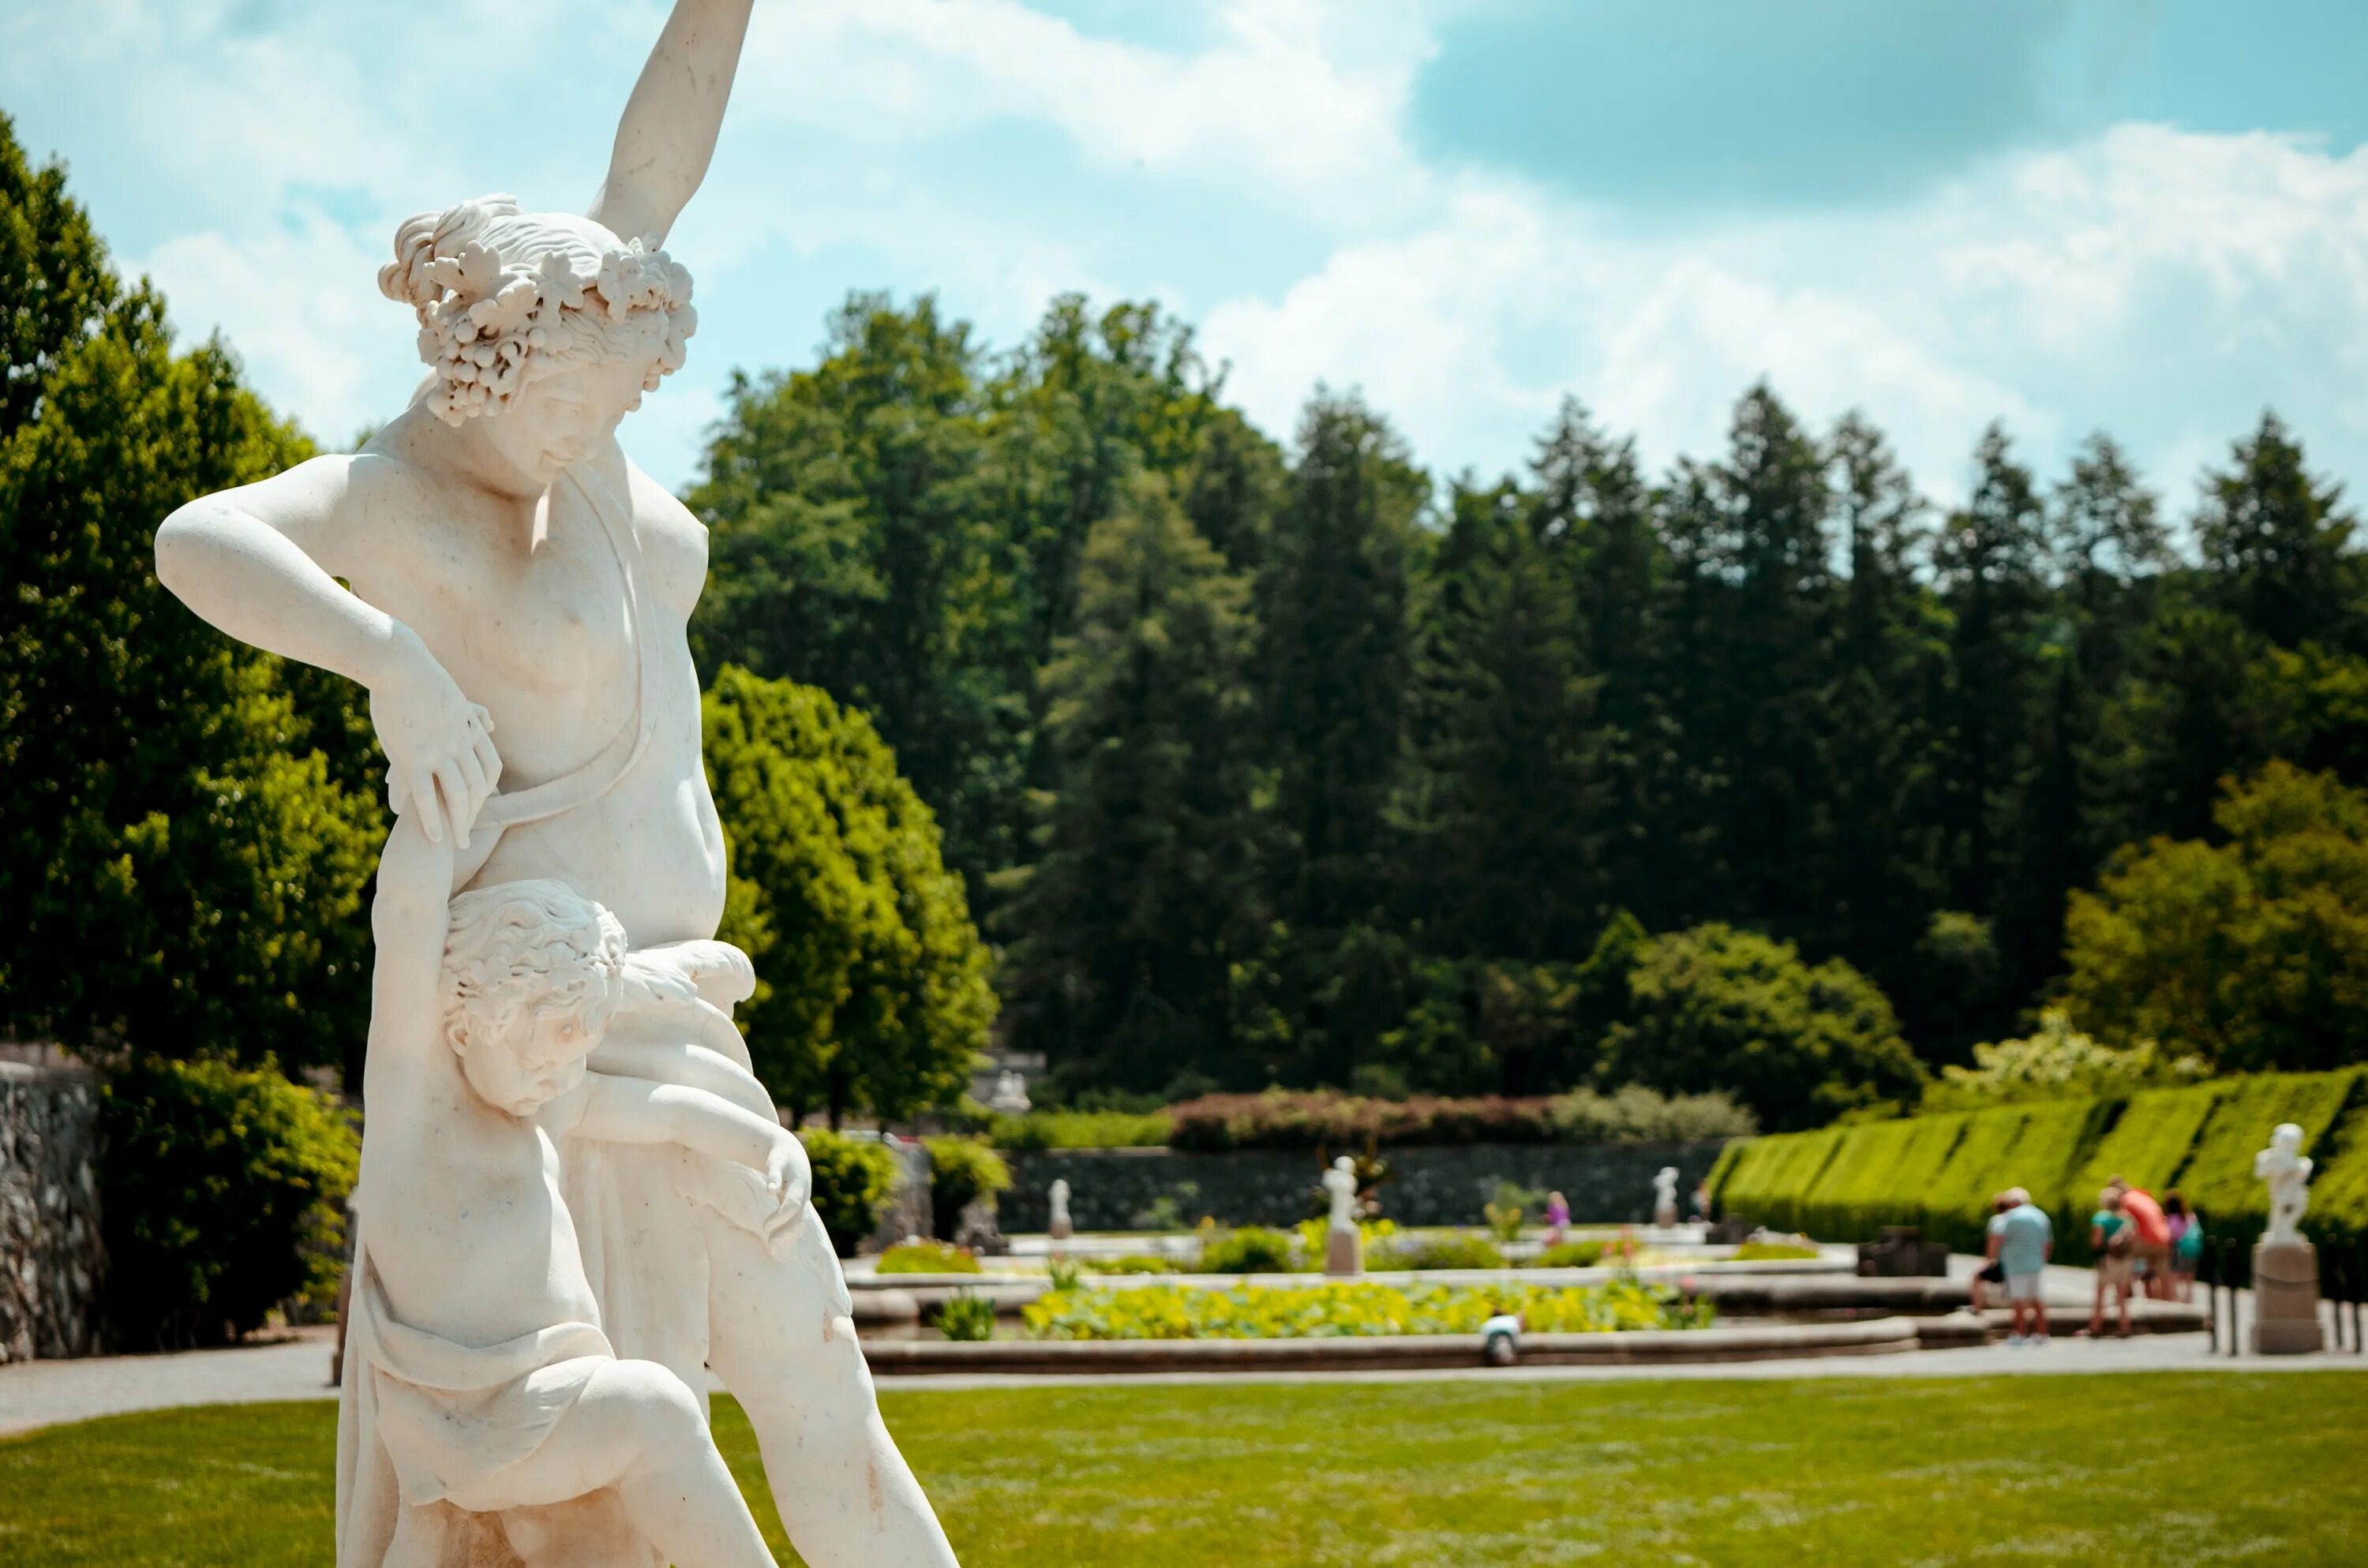 Со статуей. Летний сад статуя Терпсихора. Скульптура Терпсихора в летнем саду. Статуи форо Италико. Античные скульптуры для сада.